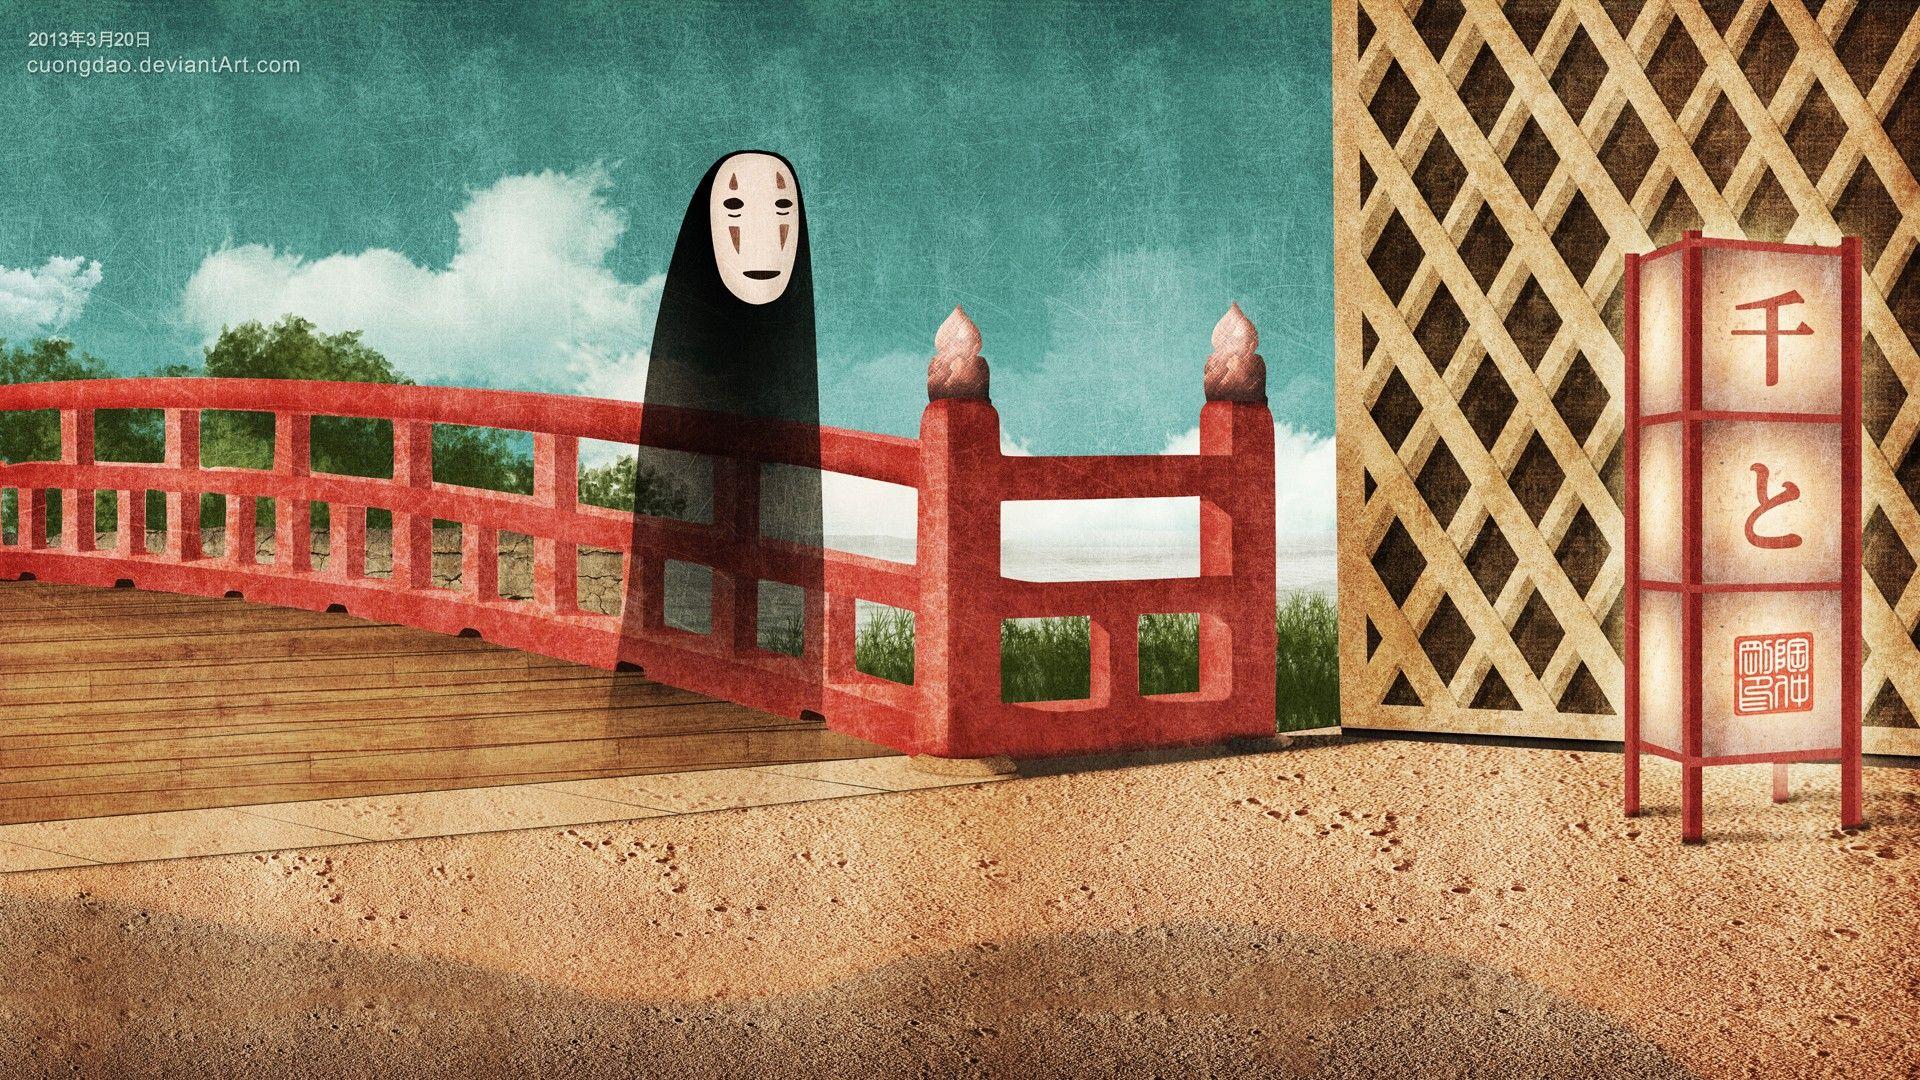 Spirited Away, no face, Studio Ghibli, anime, chihiro wallpaper